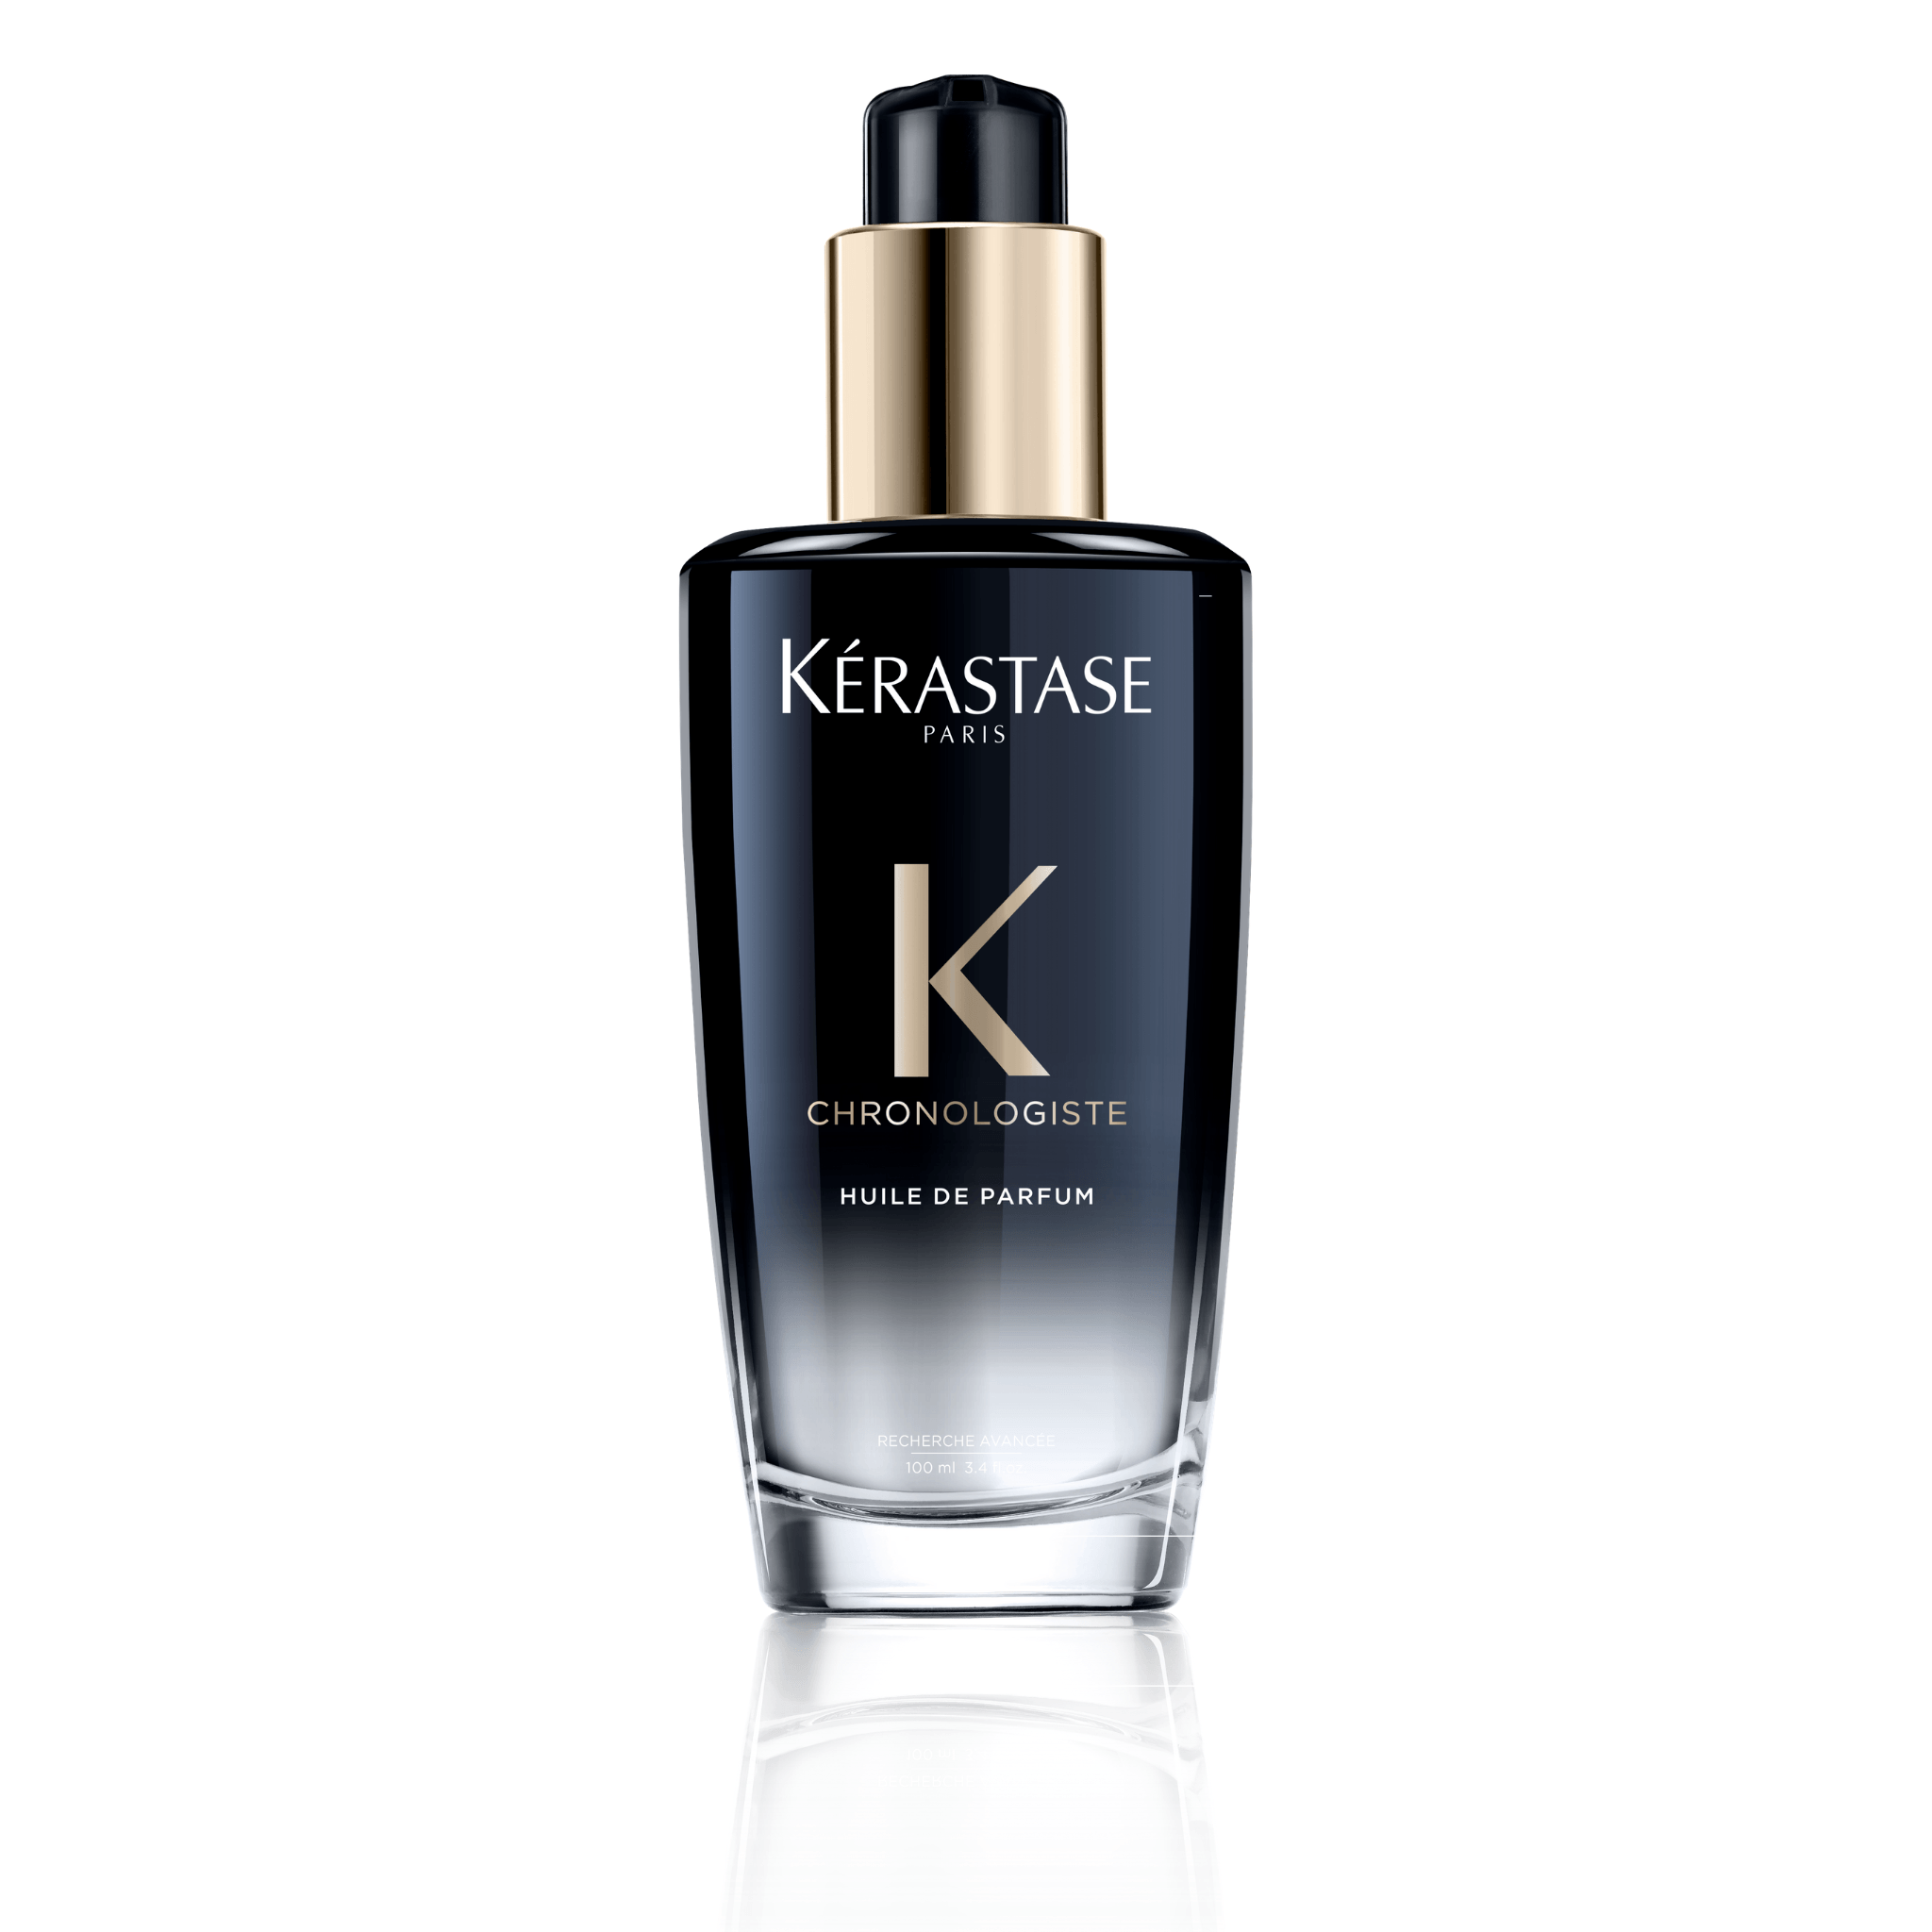 Kérastase. Chronologiste Huile de Parfum - 100 ml - Concept C. Shop